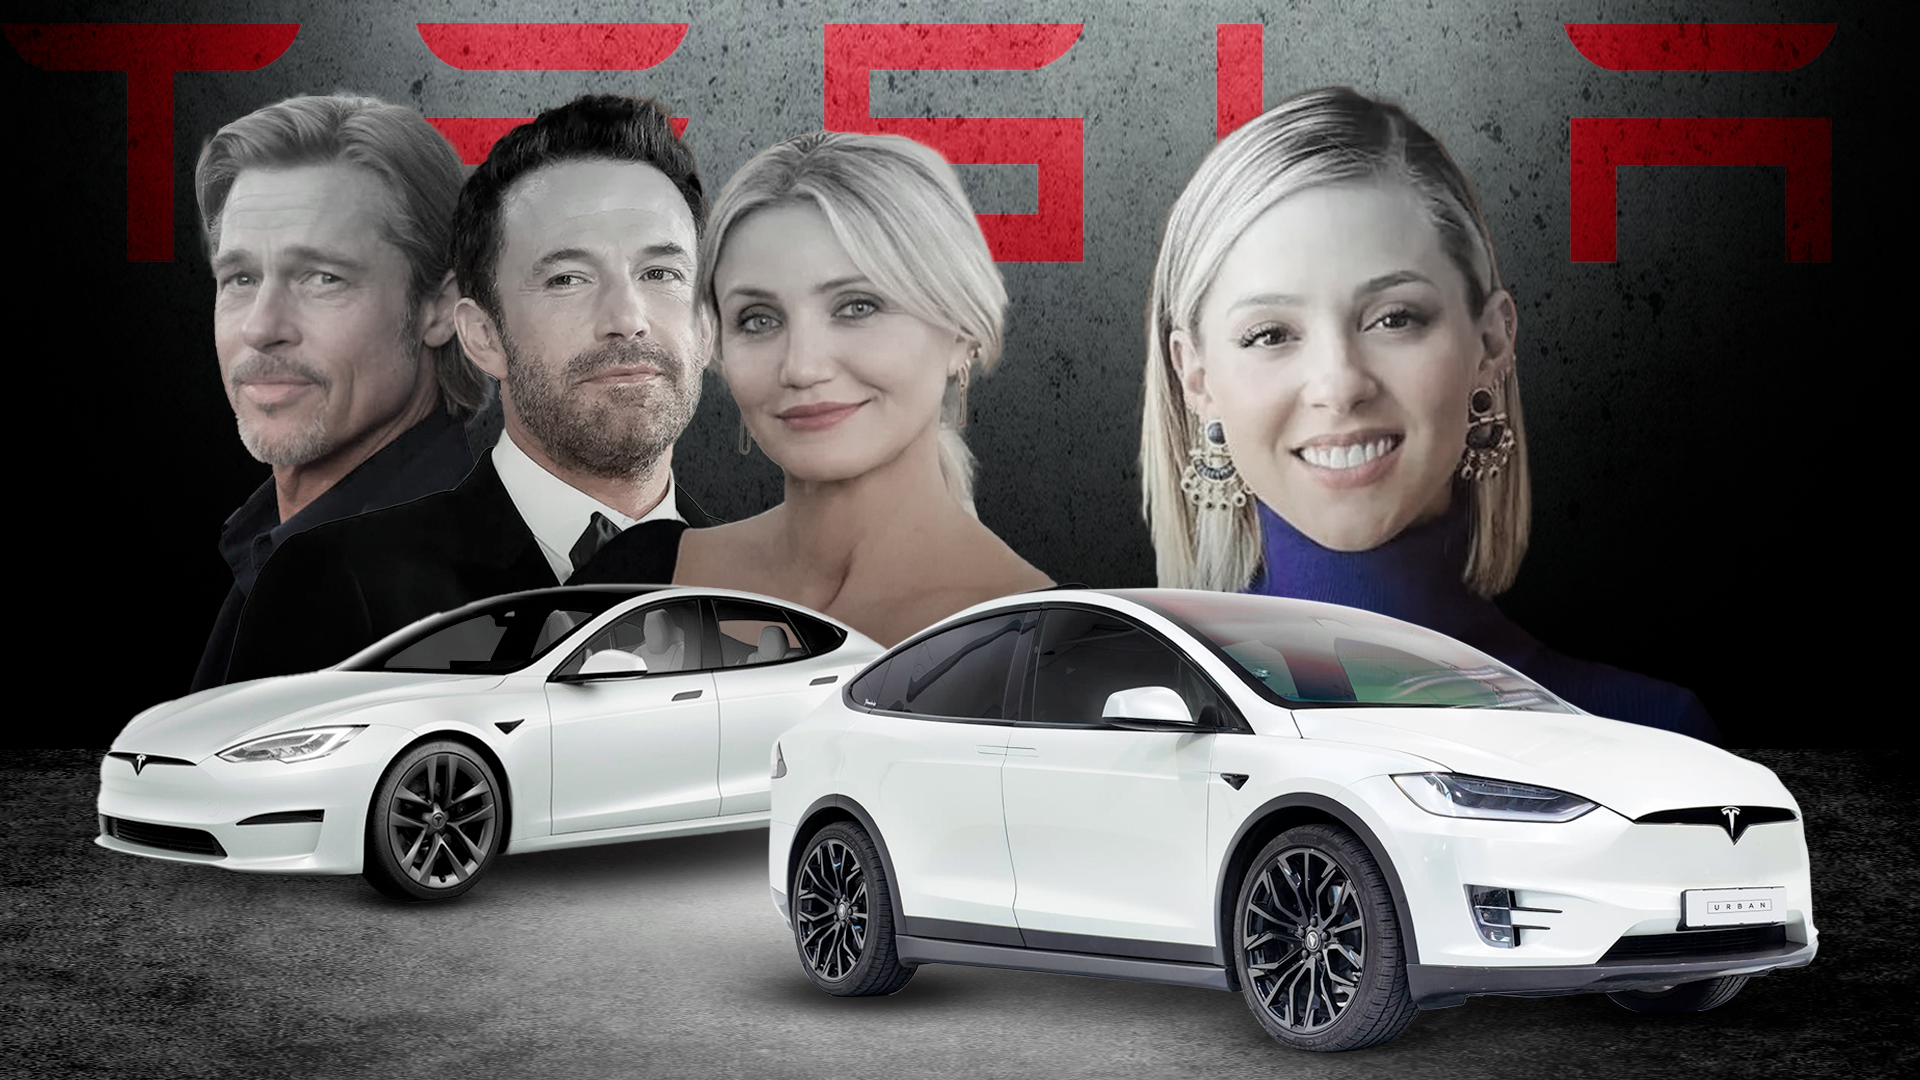 De Ben Affleck, Brad Pitt a Mariana Rodríguez: los famosos y sus millonarios vehículos Tesla